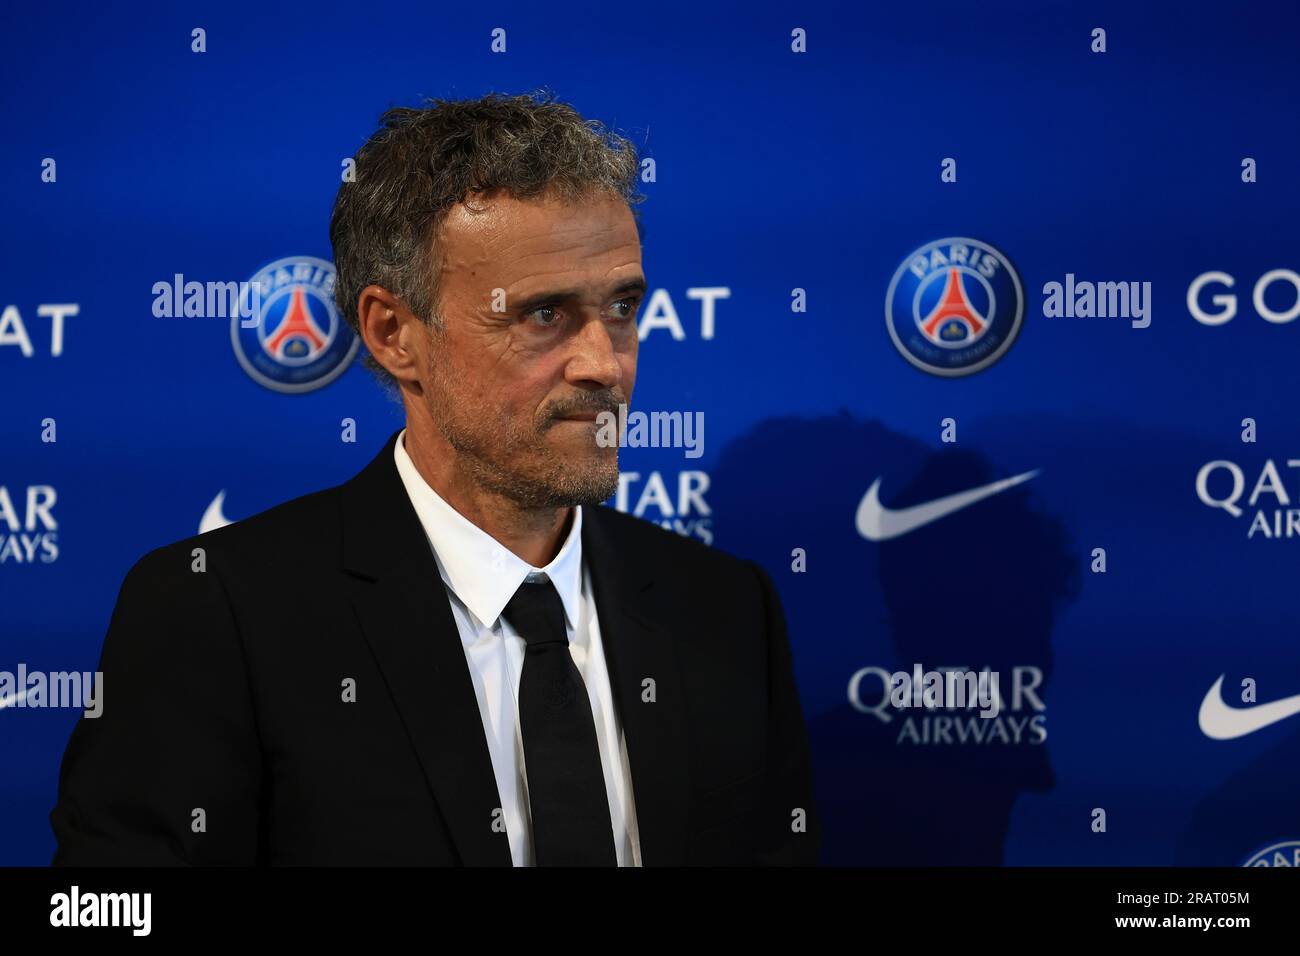 Luis Enrique named as Paris Saint-Germain's new manager